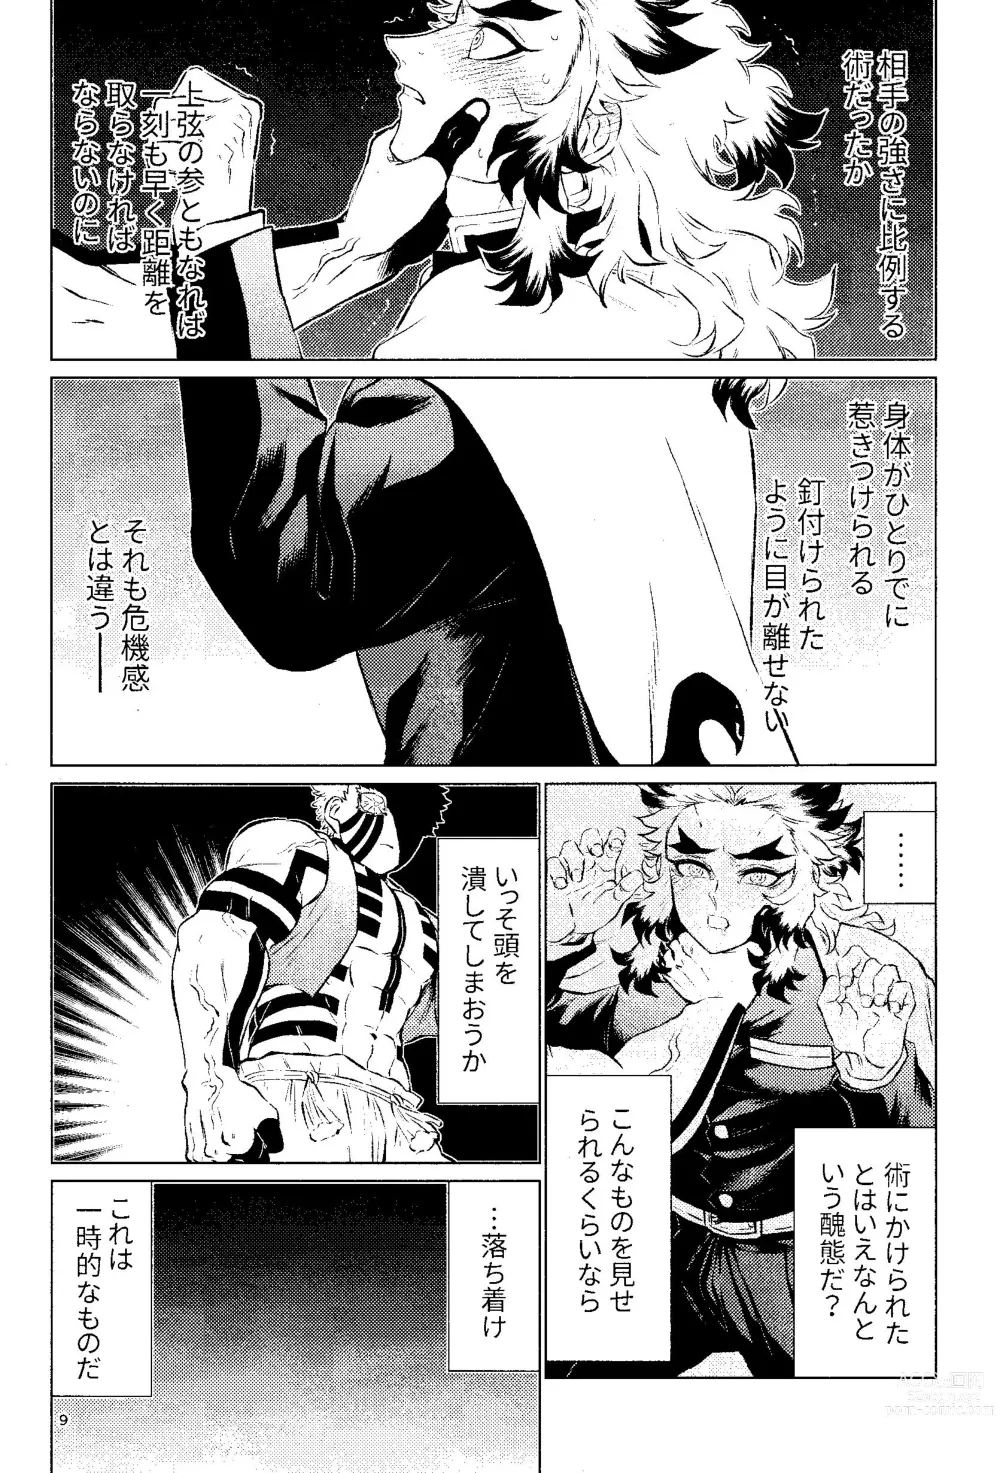 Page 7 of doujinshi Yuuen Kenki